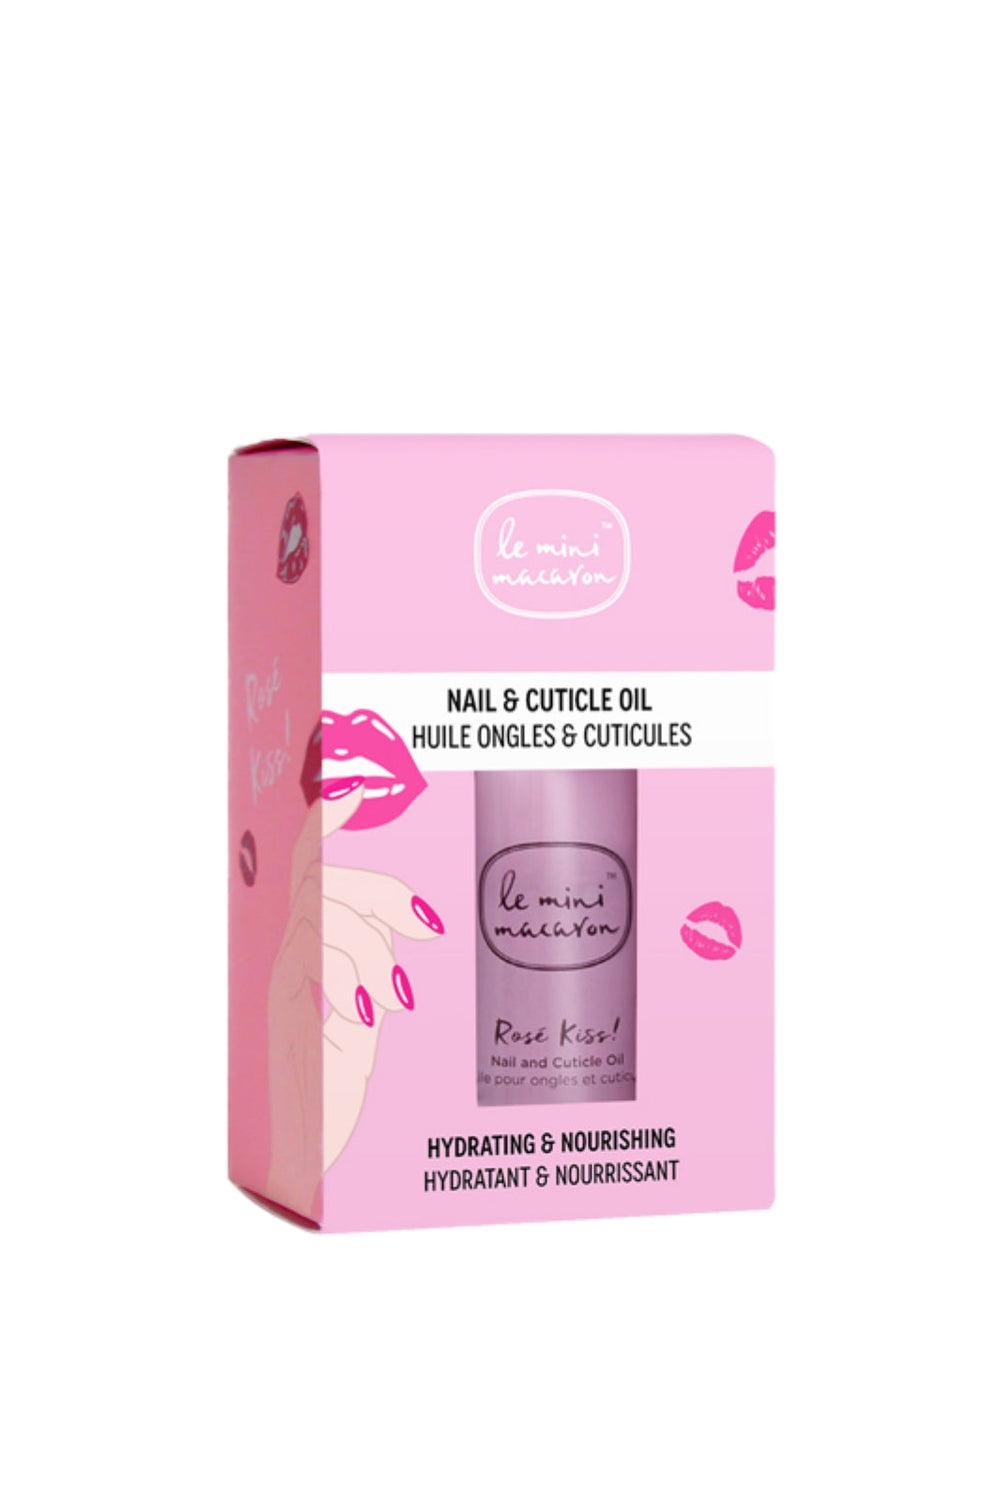 Le Mini Macaron - Rose Kiss- Nail & Cuticle Oil Nail Polishes 